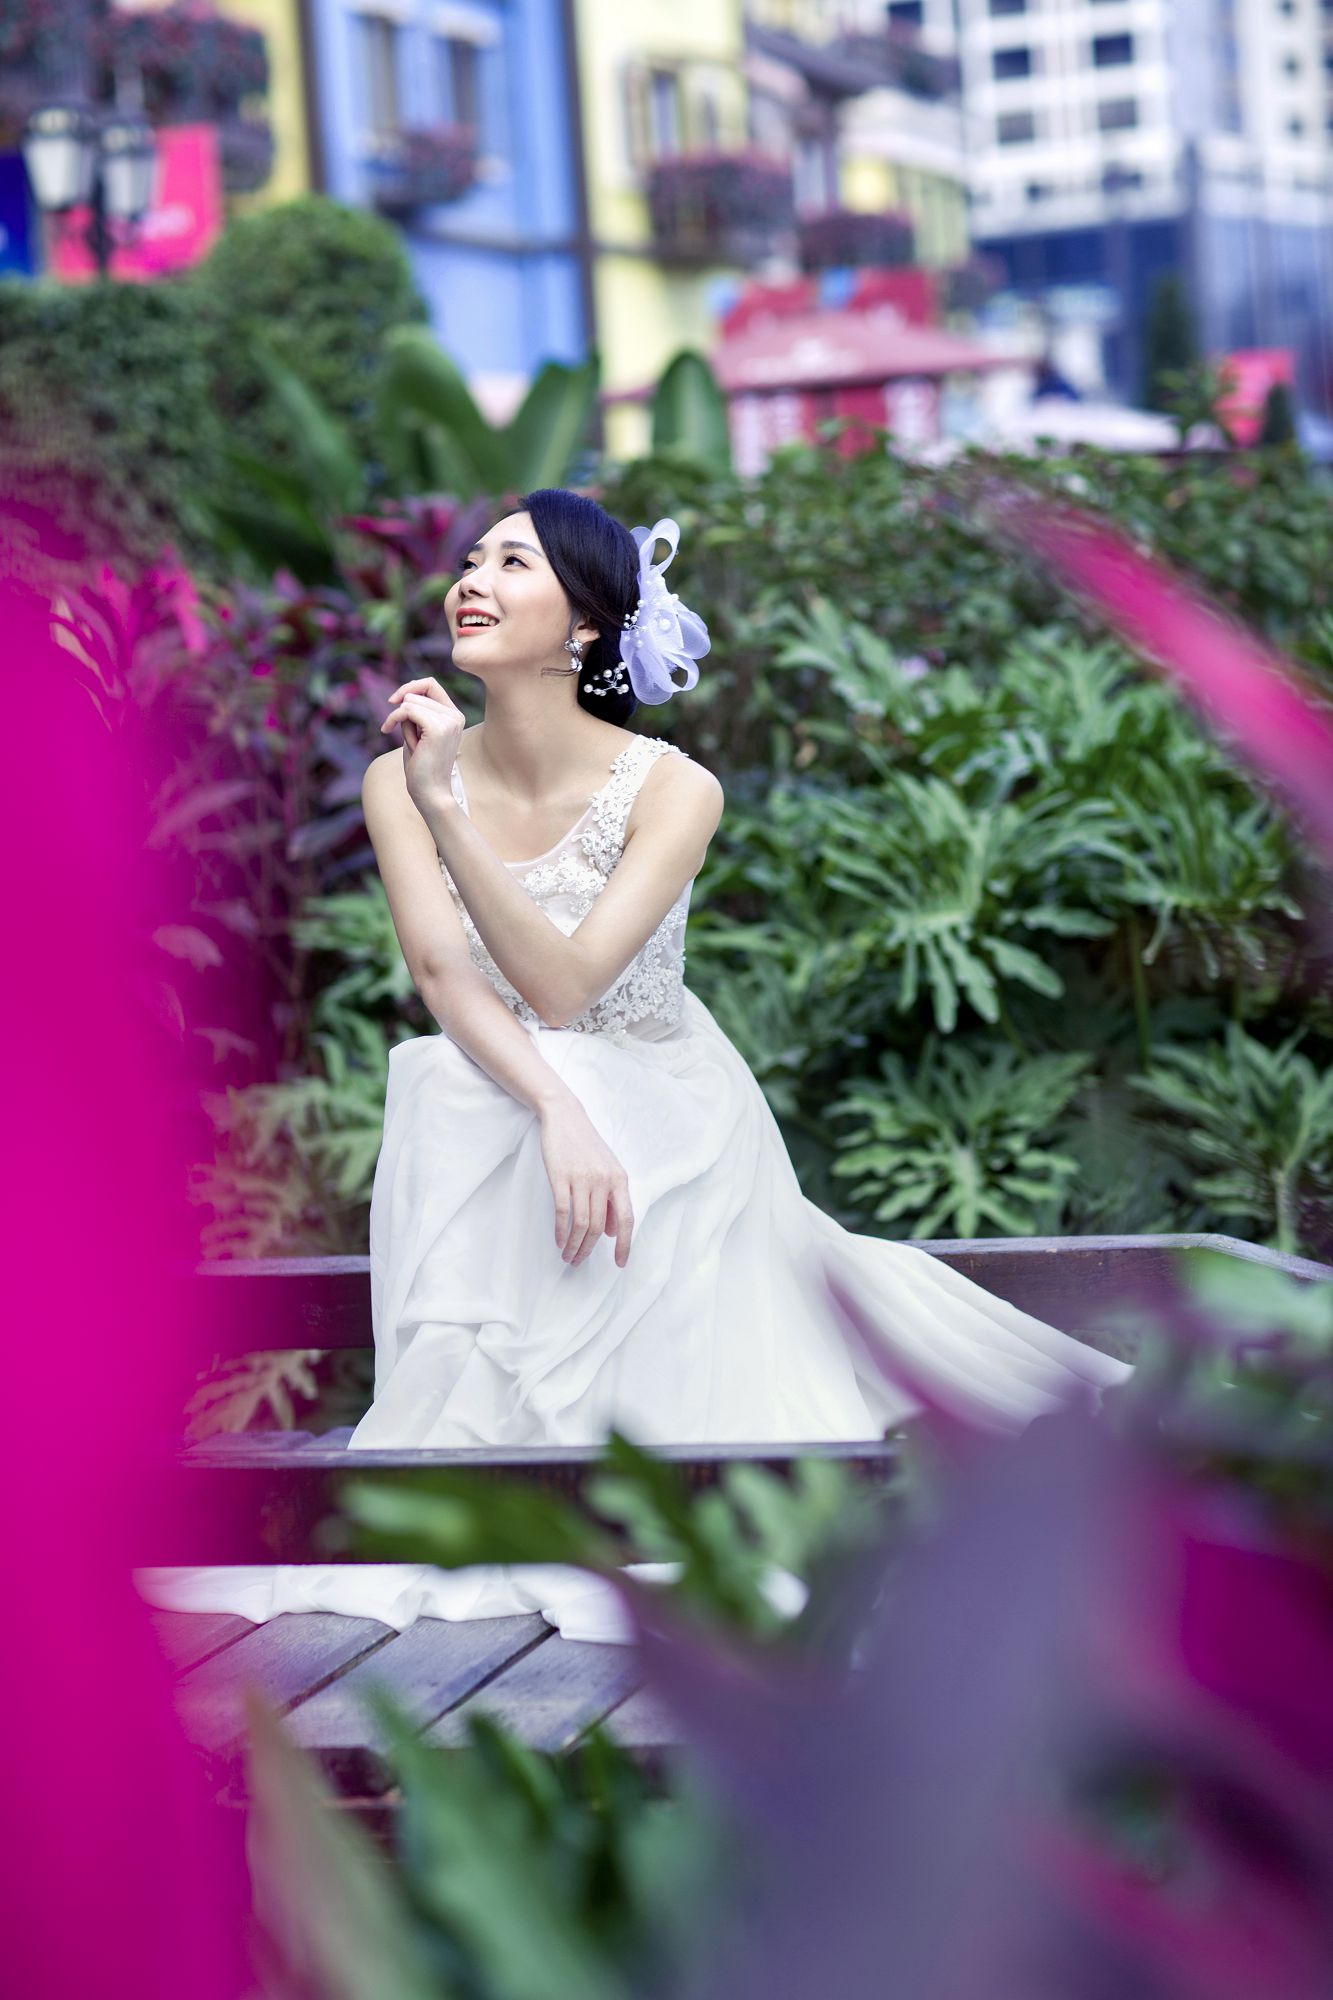 2017年7月广州结婚照,云浮婚纱照,婚纱照图片